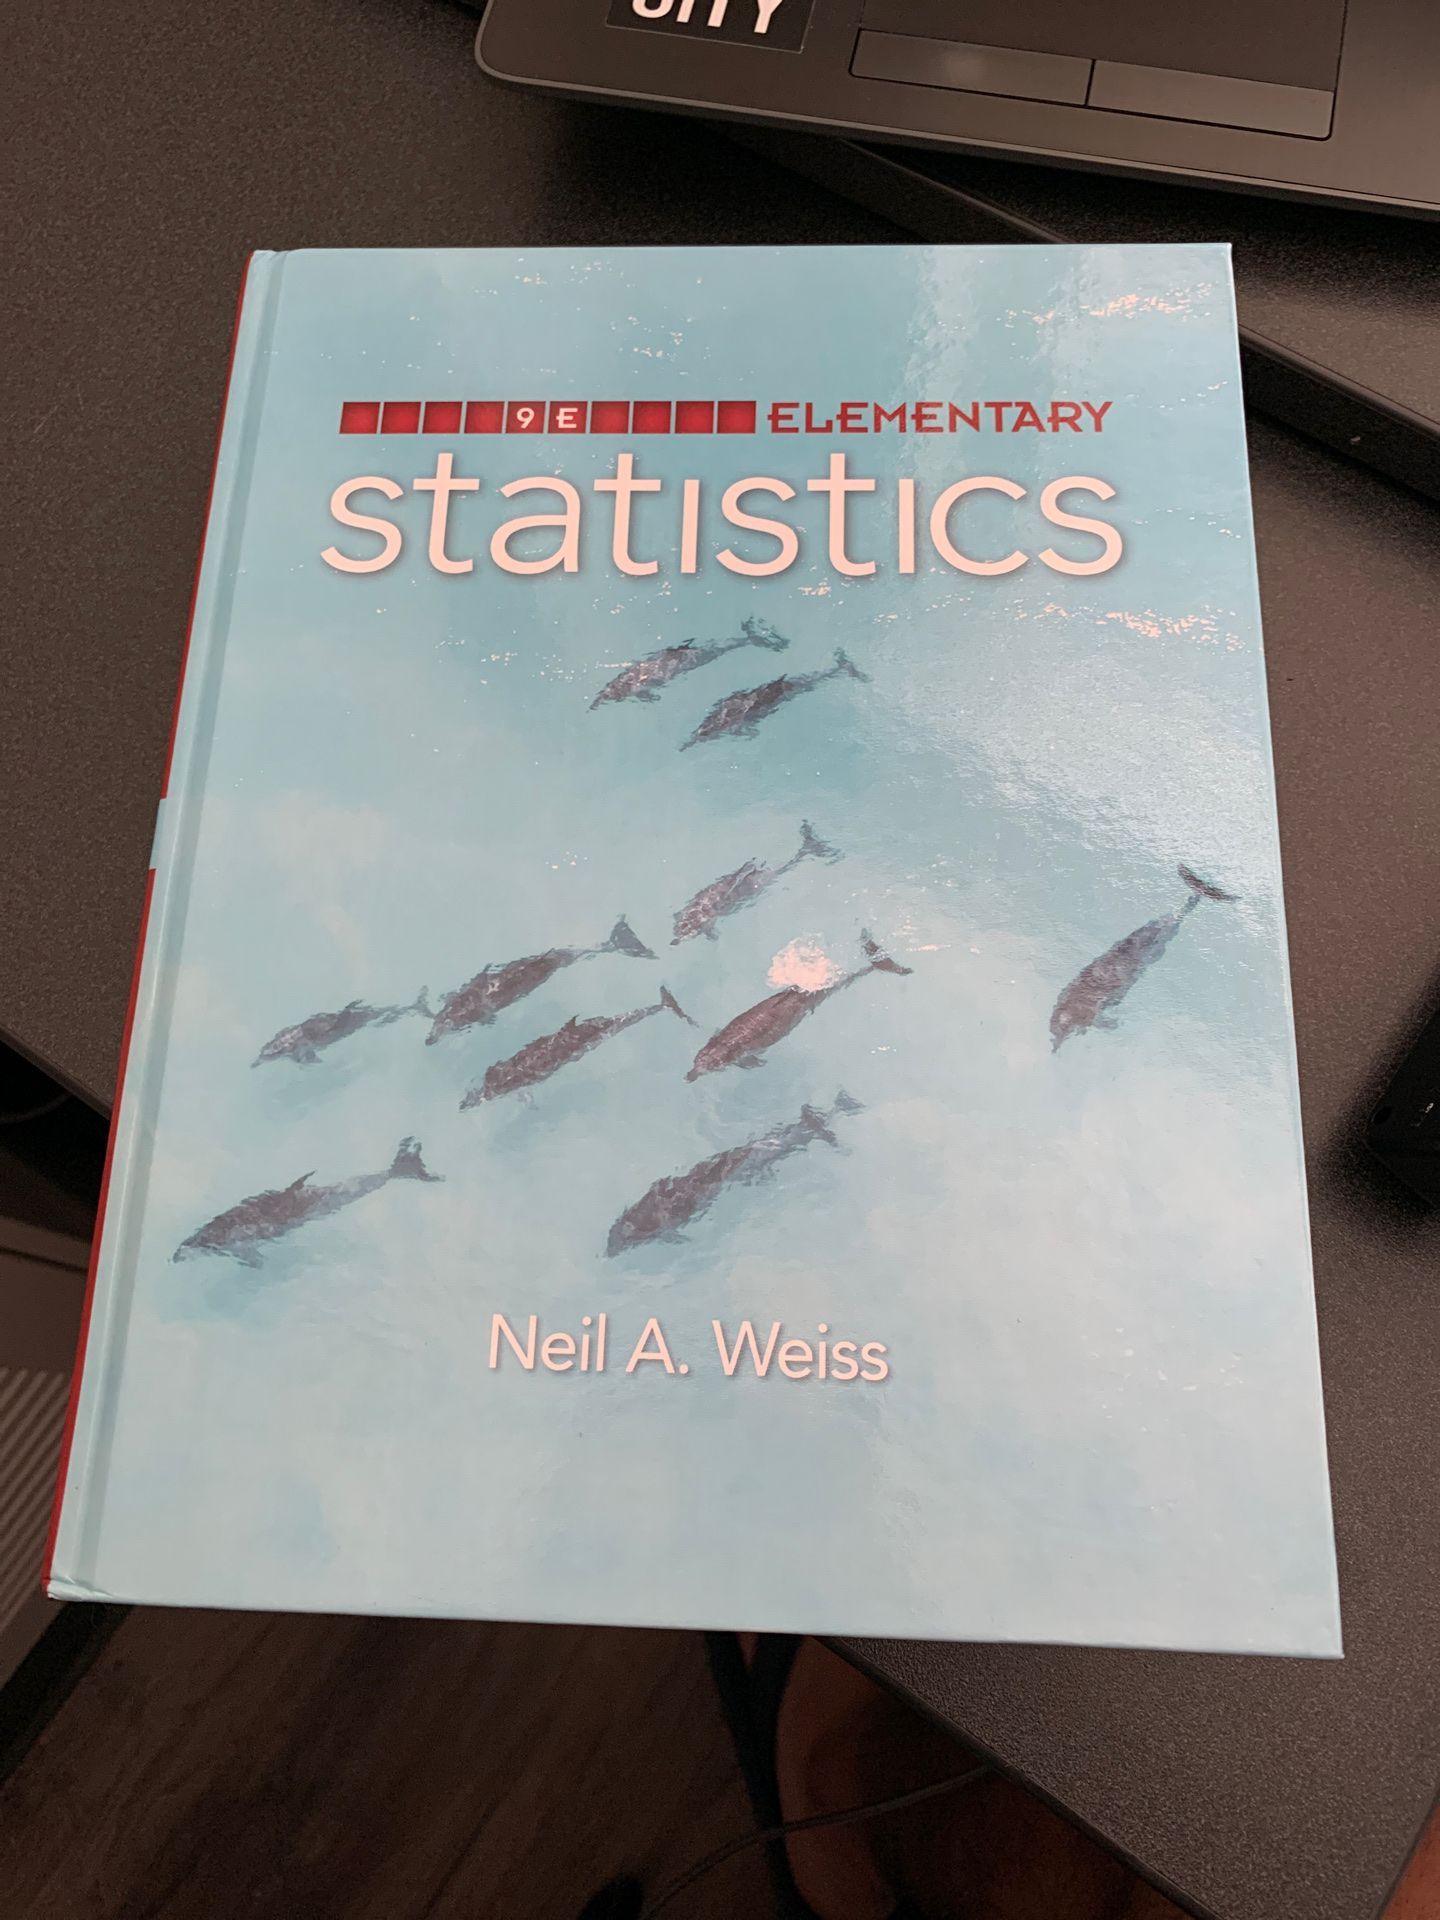 Elementary Statistics (Neil A. Weiss)